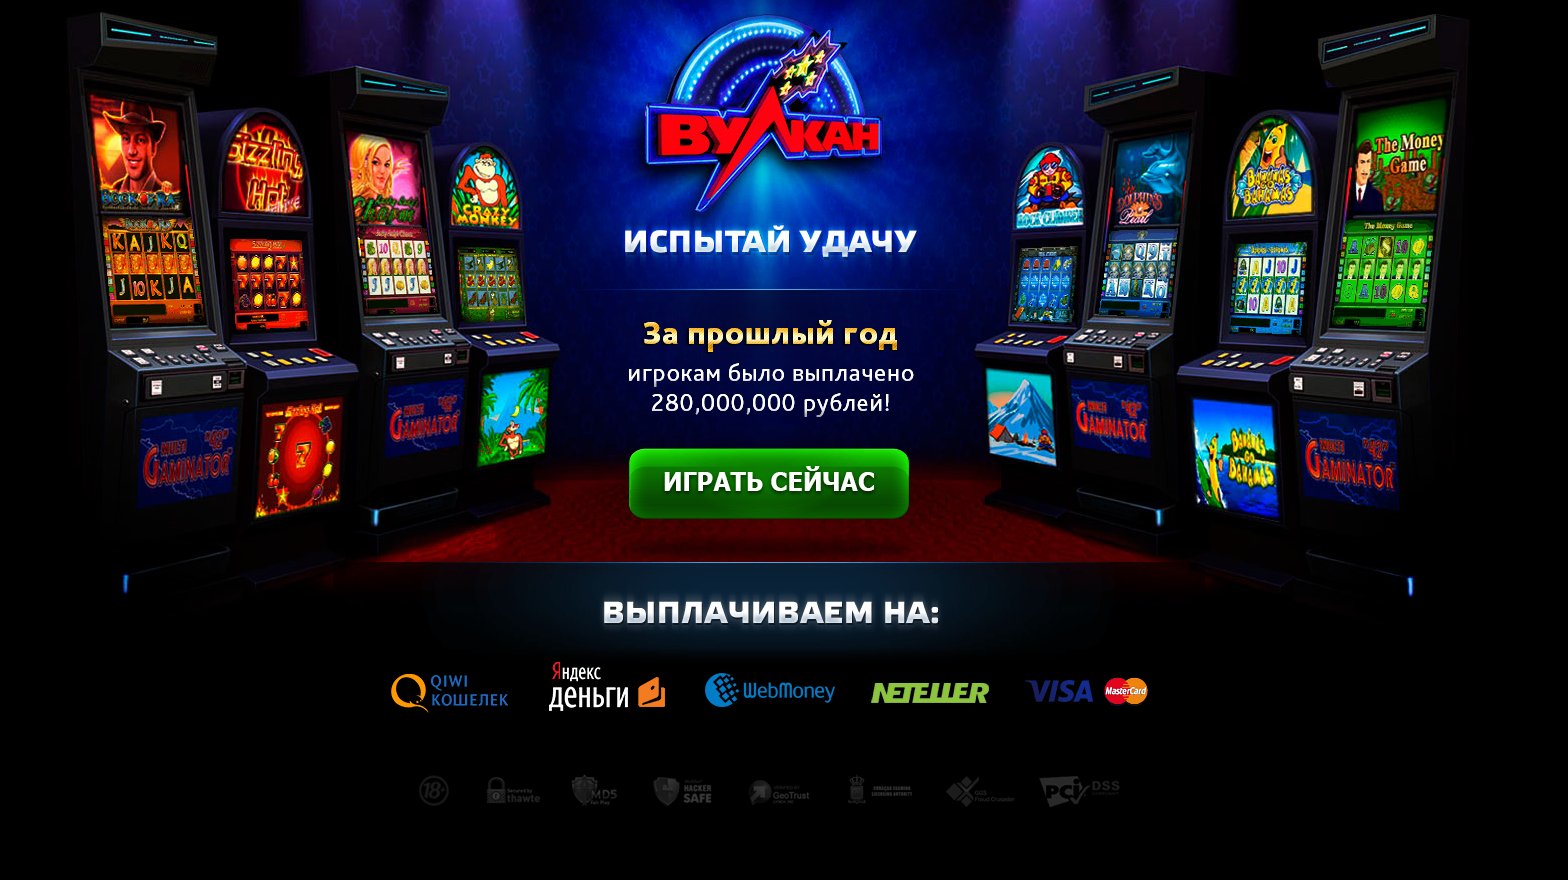 Бесплатные игровые автоматы вулкан онлайн на яндекс браузере россия подготовка ограбления казино в гта 5 онлайн